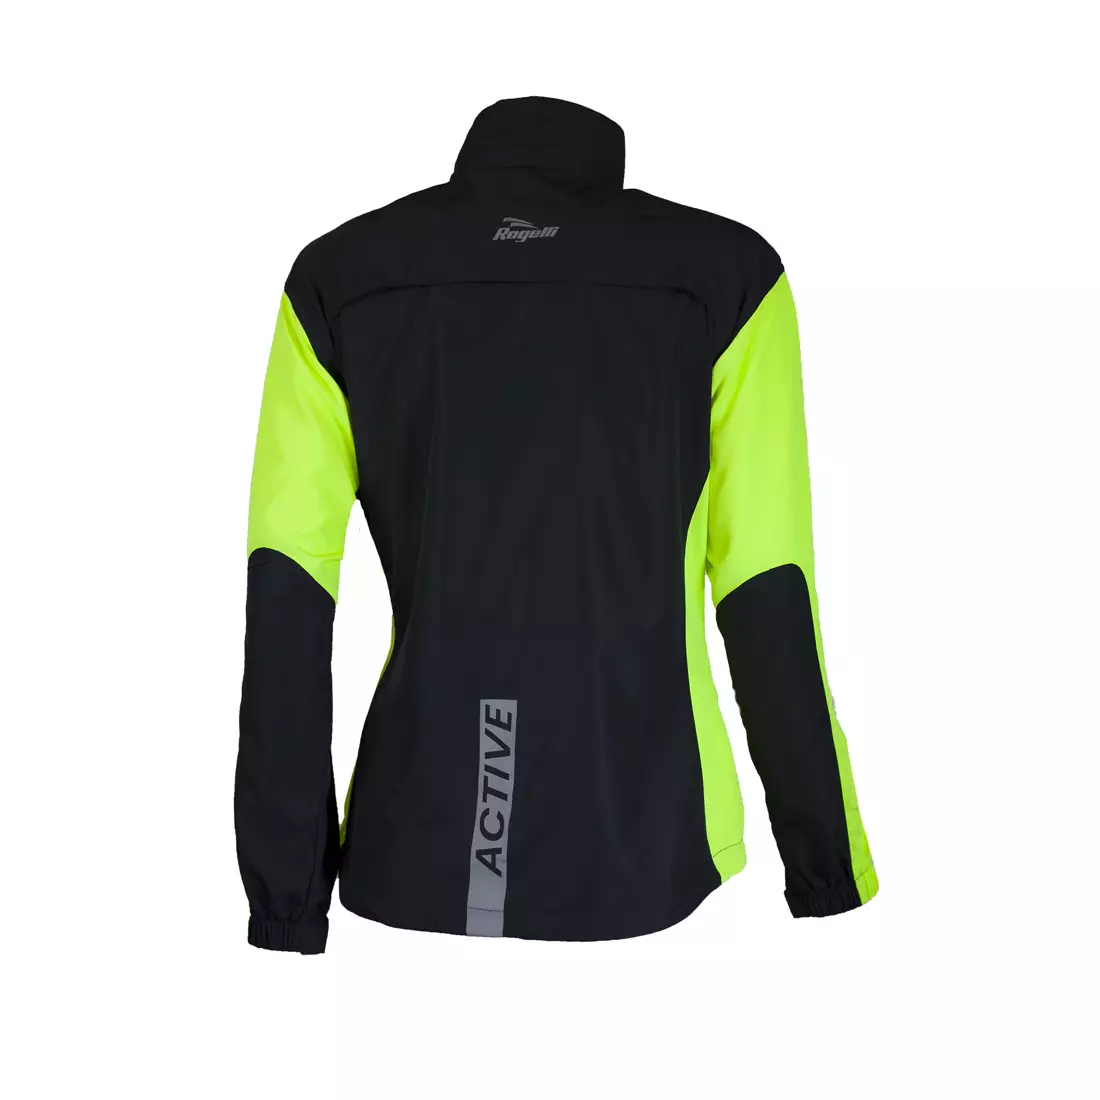 ROGELLI RUN ELVI - dámská ultralehká běžecká bunda, černo-fluor